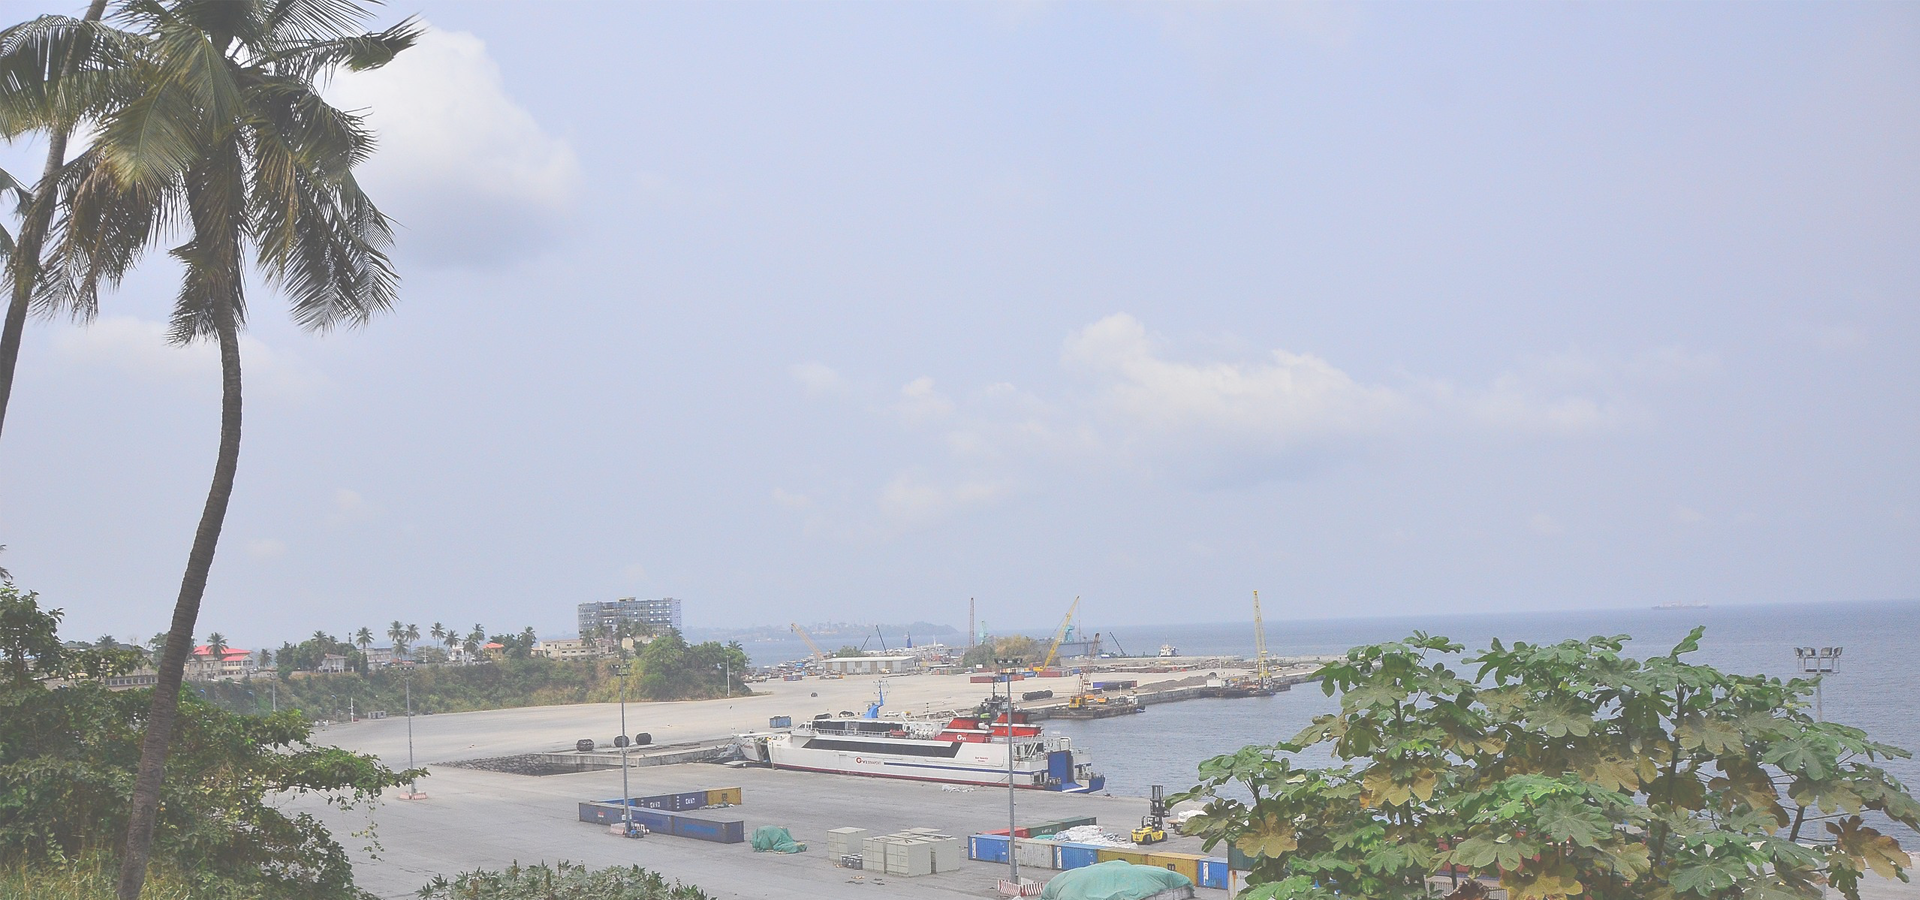 The  SME Market in Equatorial Guinea